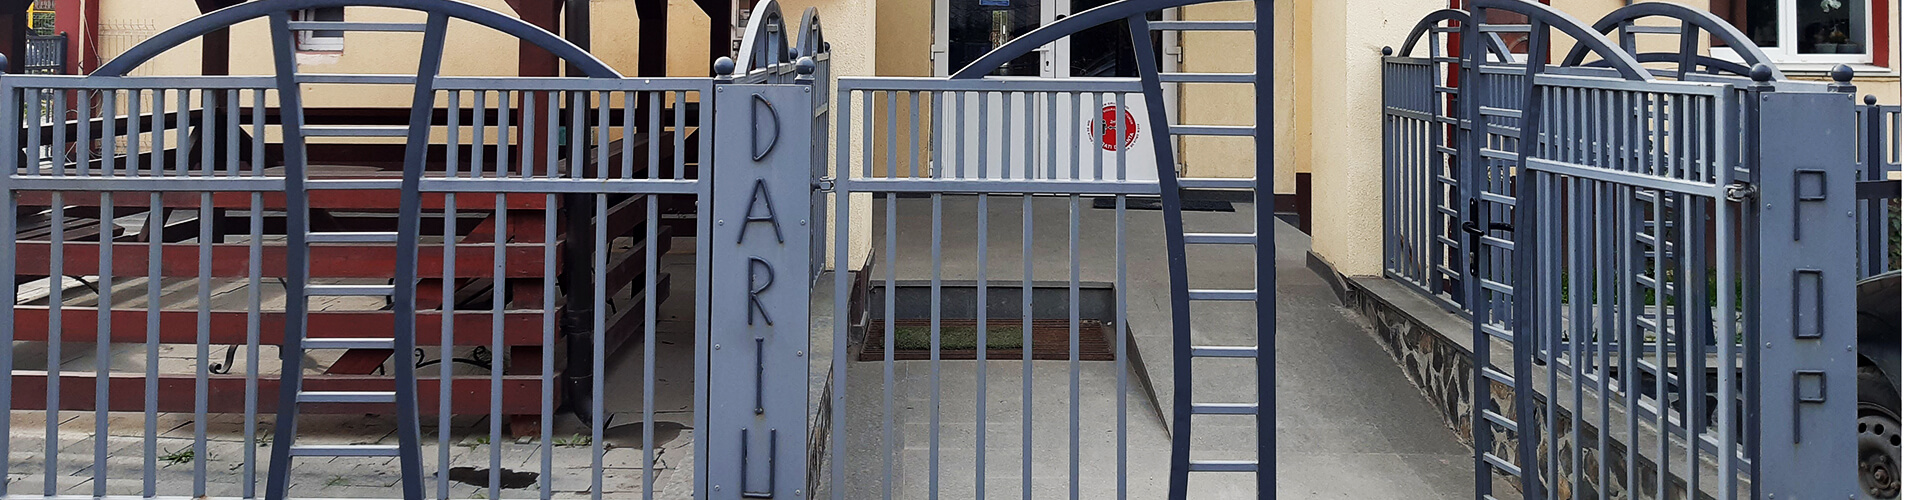 Școala Gimnazială „Dariu Pop” Măgura Ilvei